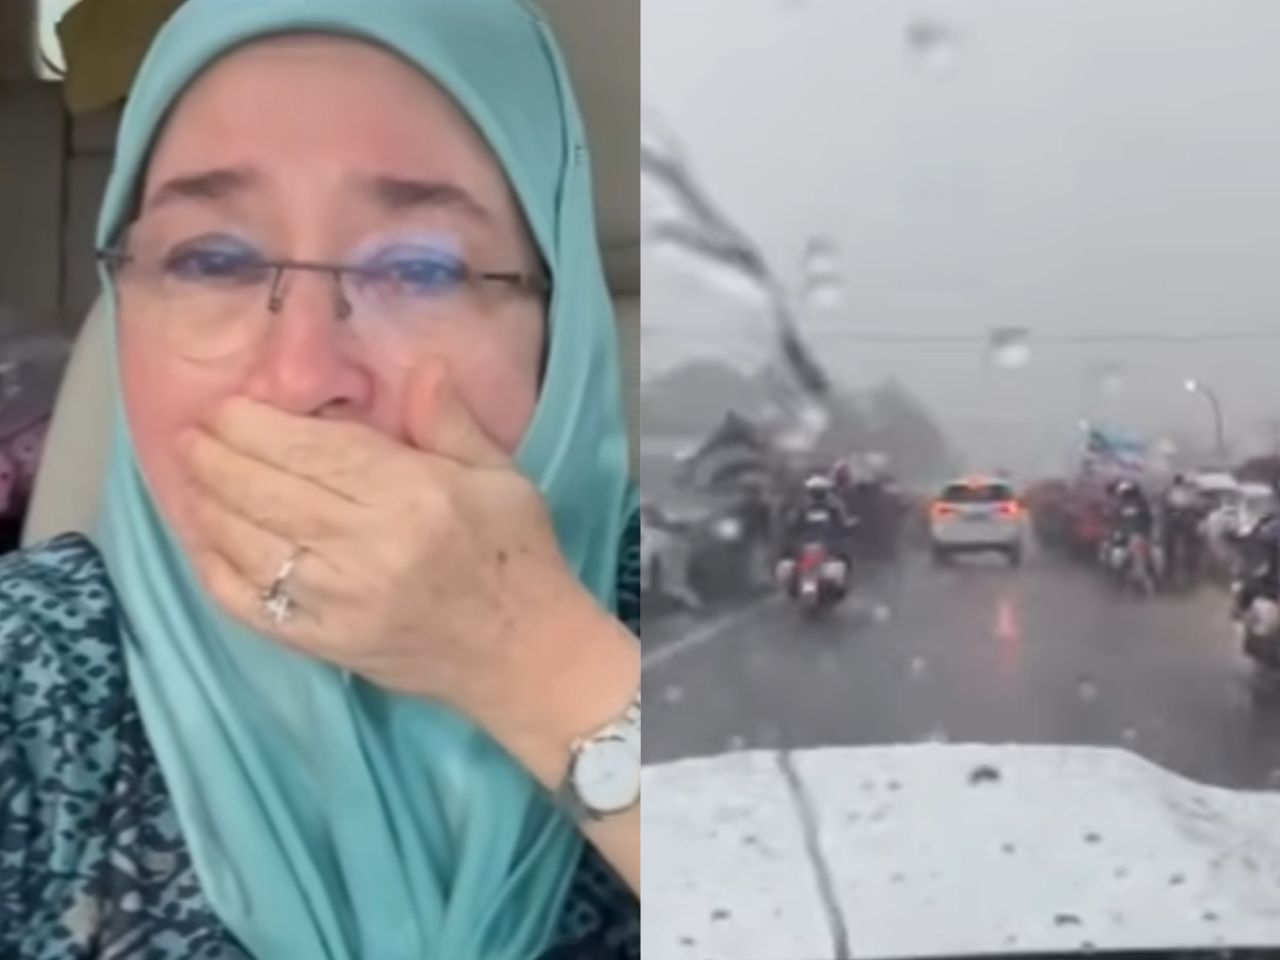 [VIDEO] Permaisuri doakan orang Sabah tidak sakit, tidak demam tunggu dalam hujan